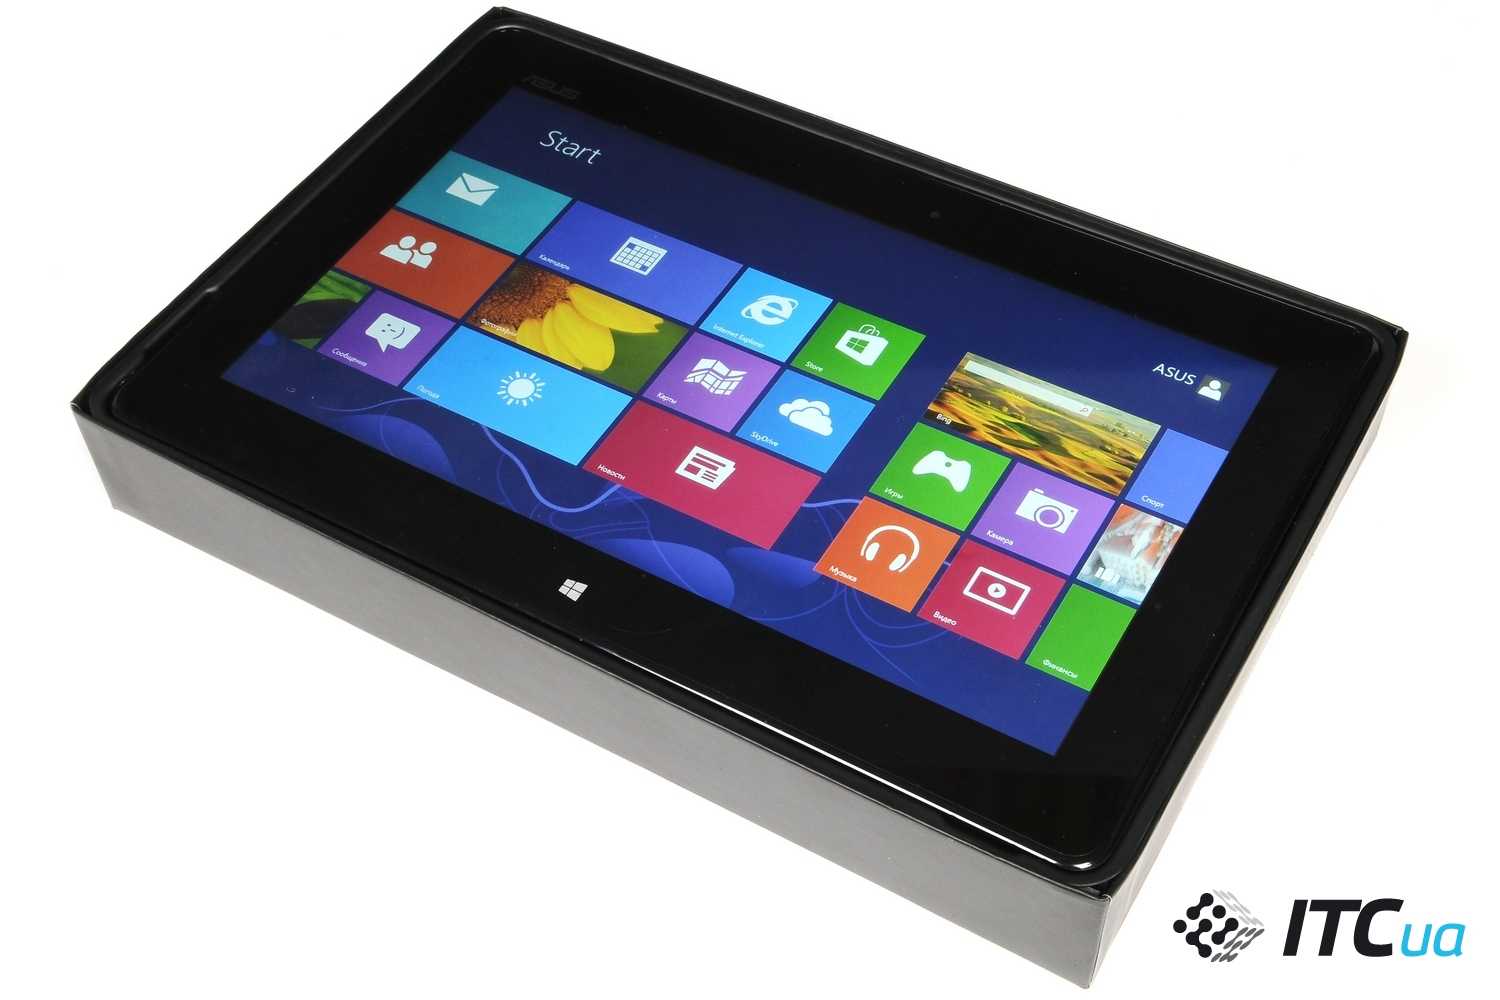 Asus vivotab smart me400c 64gb (черный) - купить , скидки, цена, отзывы, обзор, характеристики - планшеты